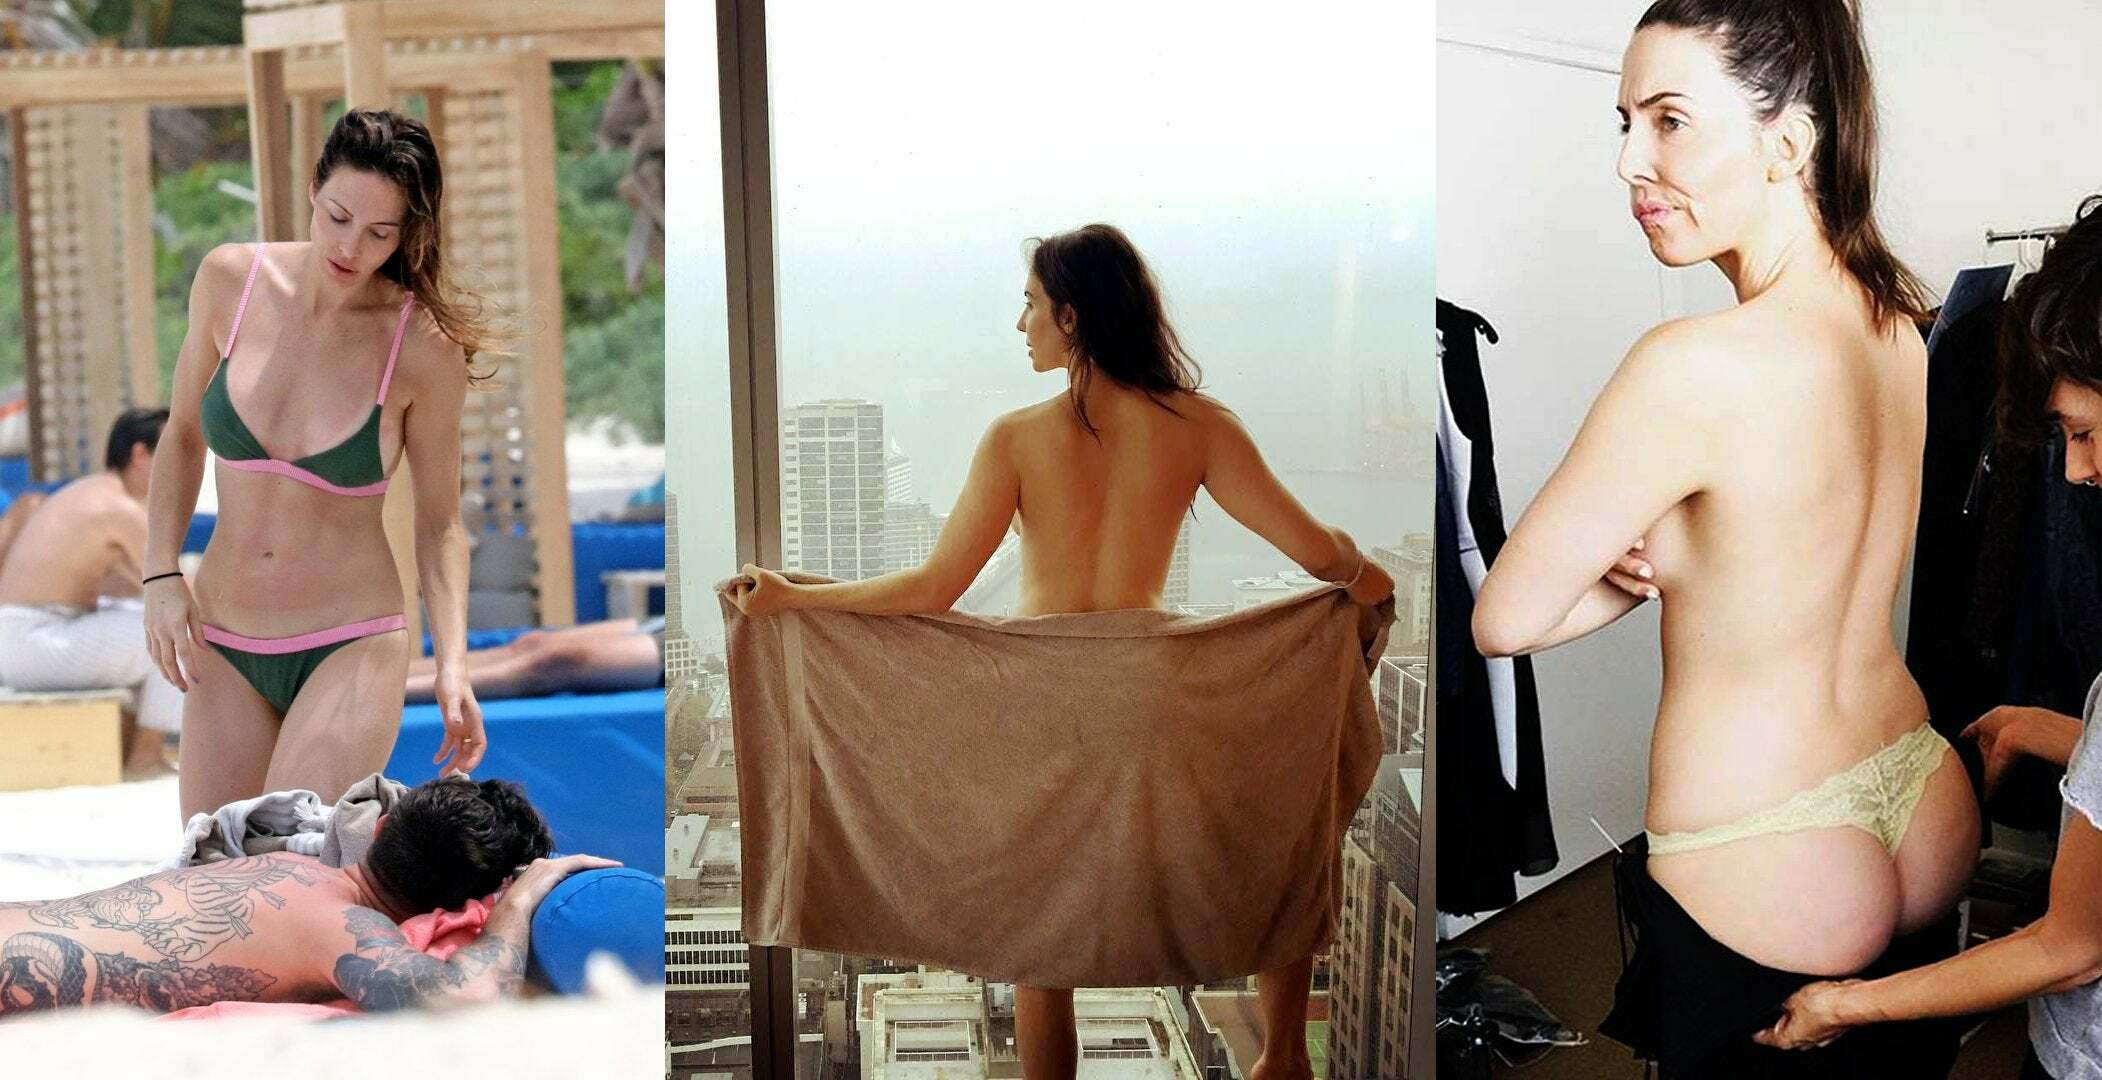 Whitney cummings nude photos